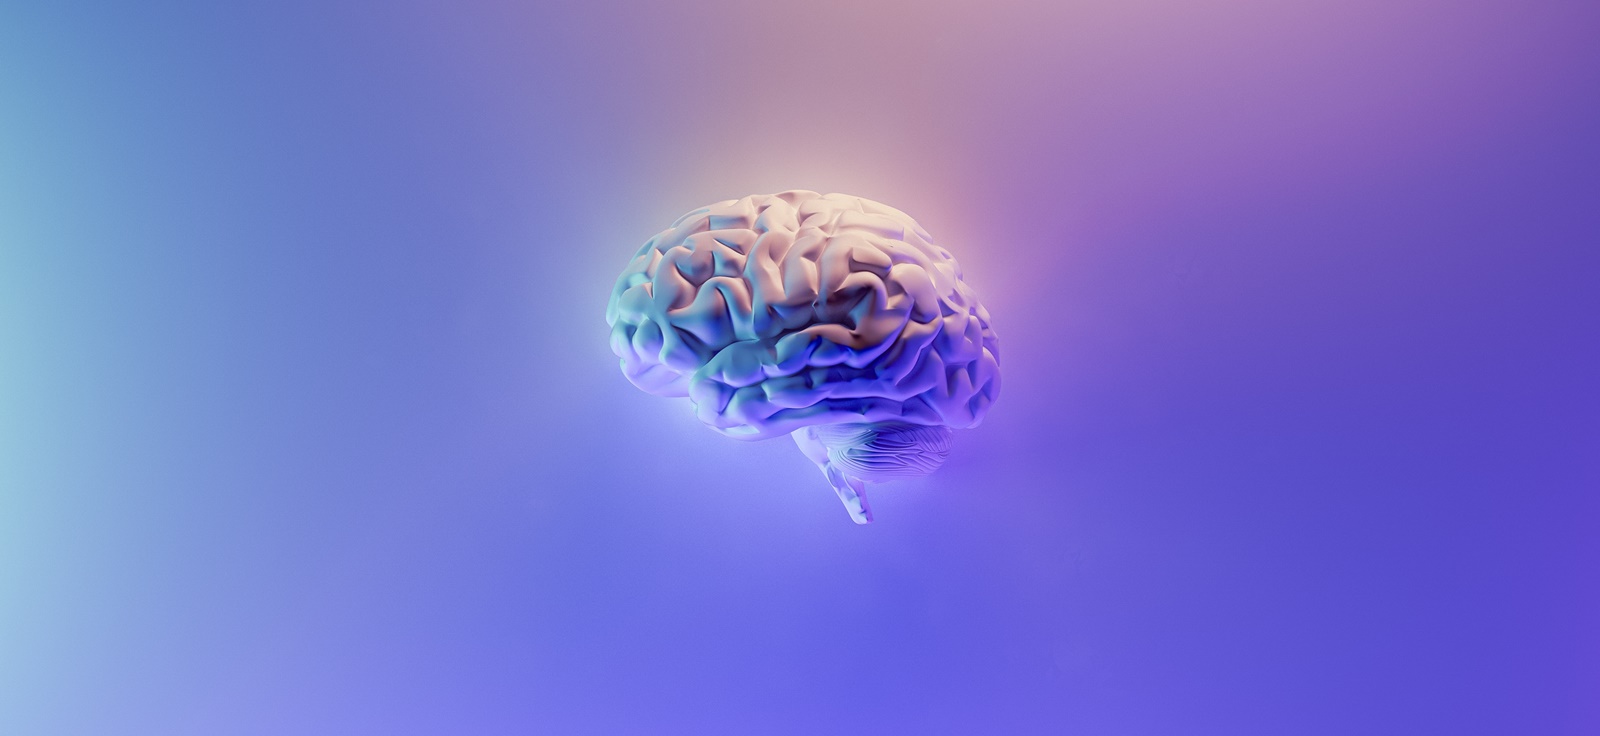 Τσιπάκι στον εγκέφαλο Έλον Μασκ: Πρόβλημα στο εμφύτευμα του πρώτου ασθενή